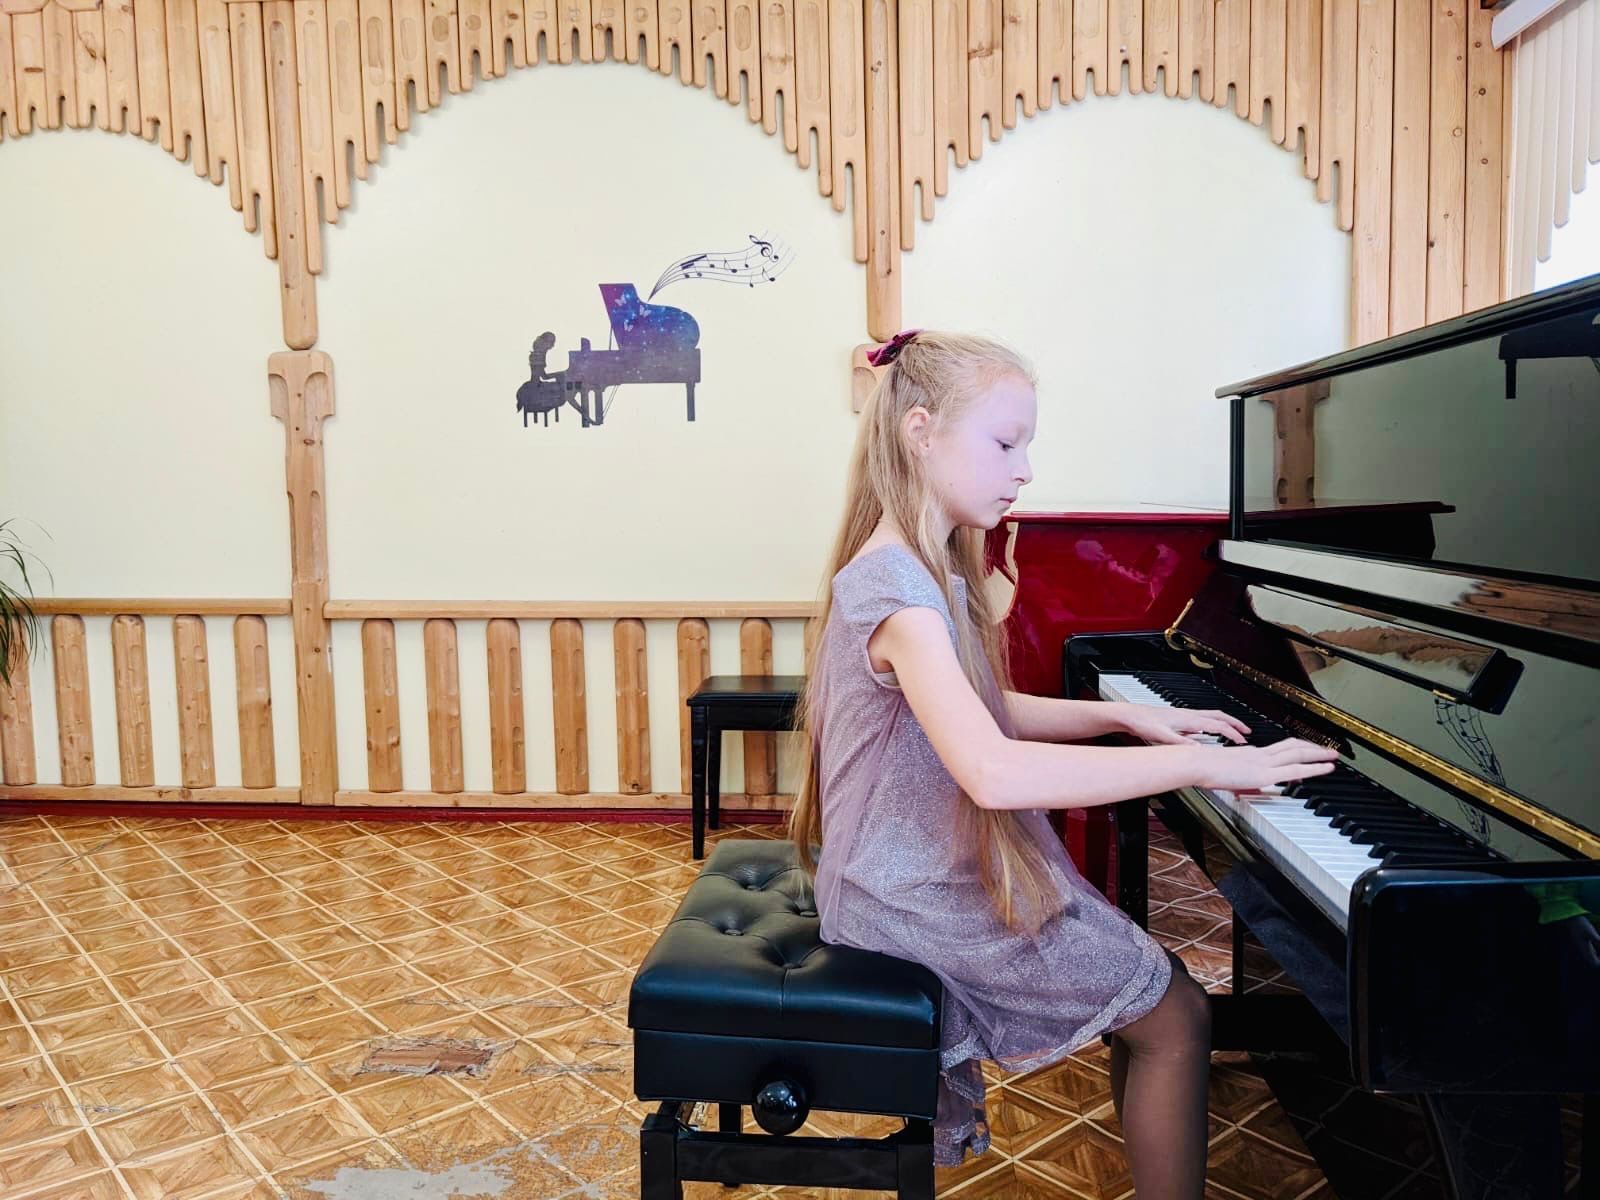 Камполянские пианисты приняли участие в региональном конкурсе в г. Нижнекамск